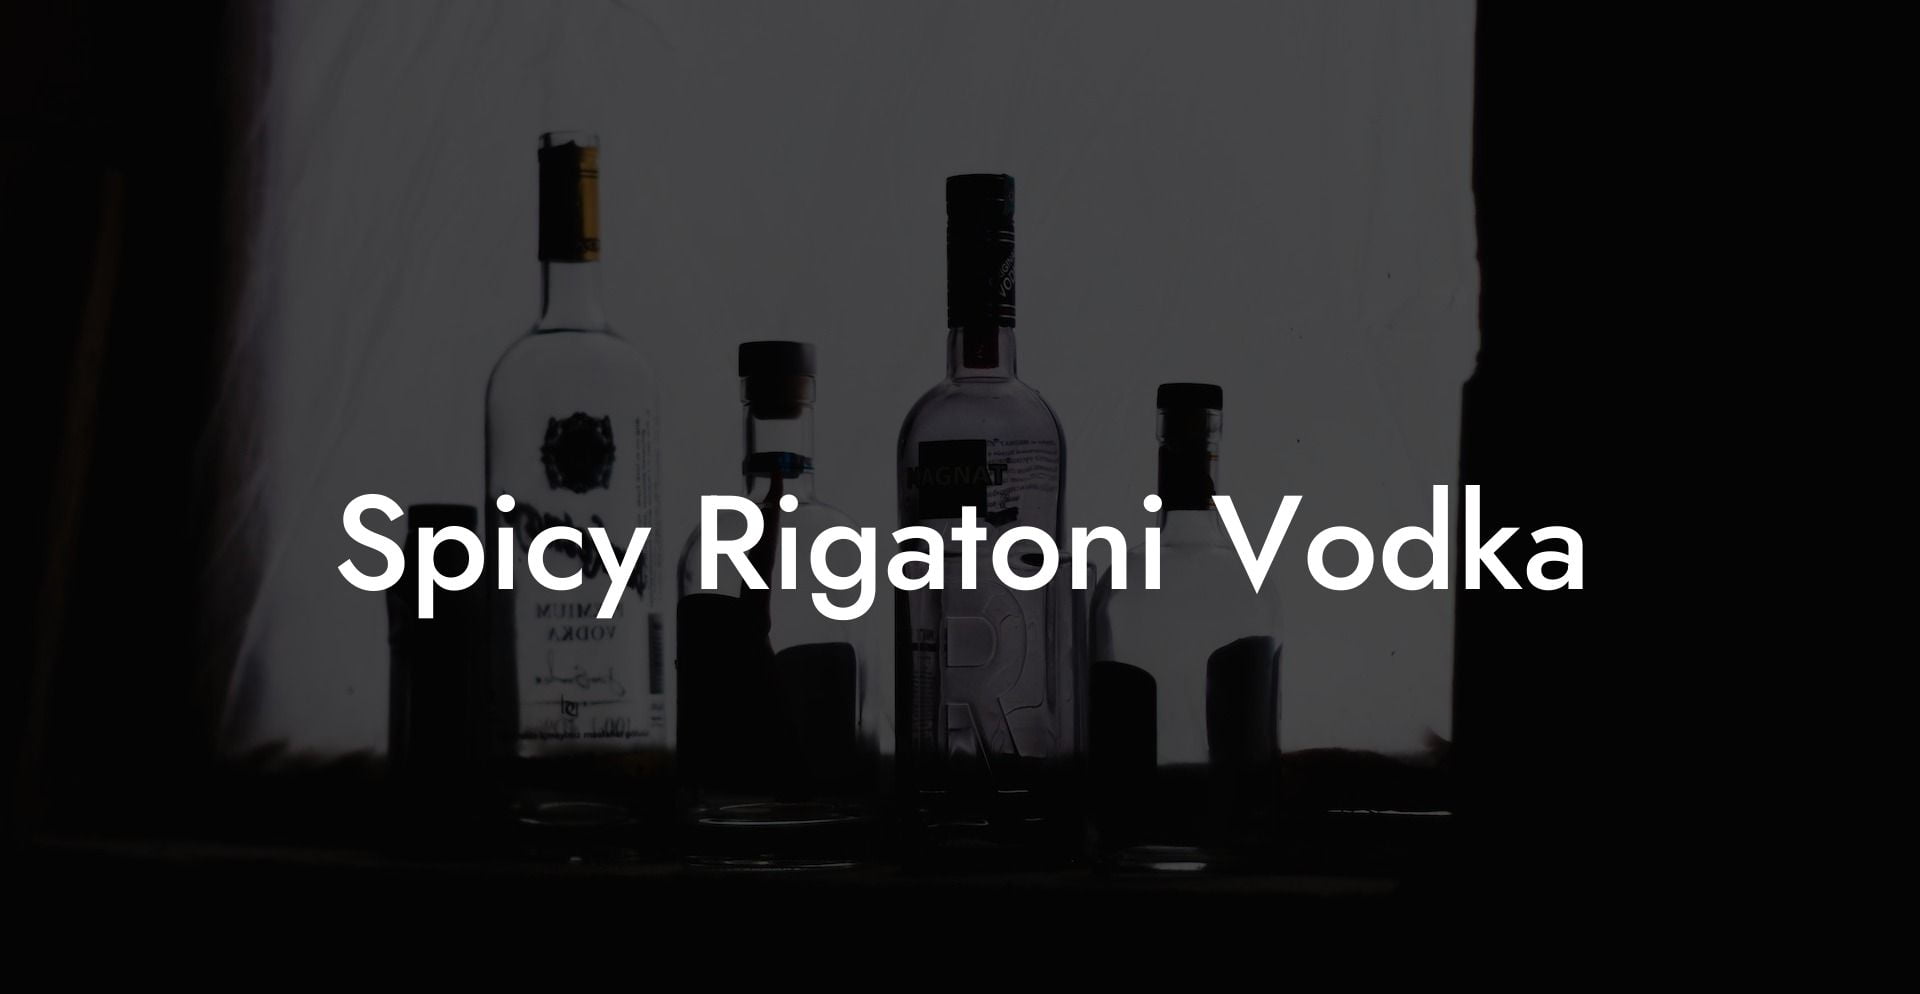 Spicy Rigatoni Vodka